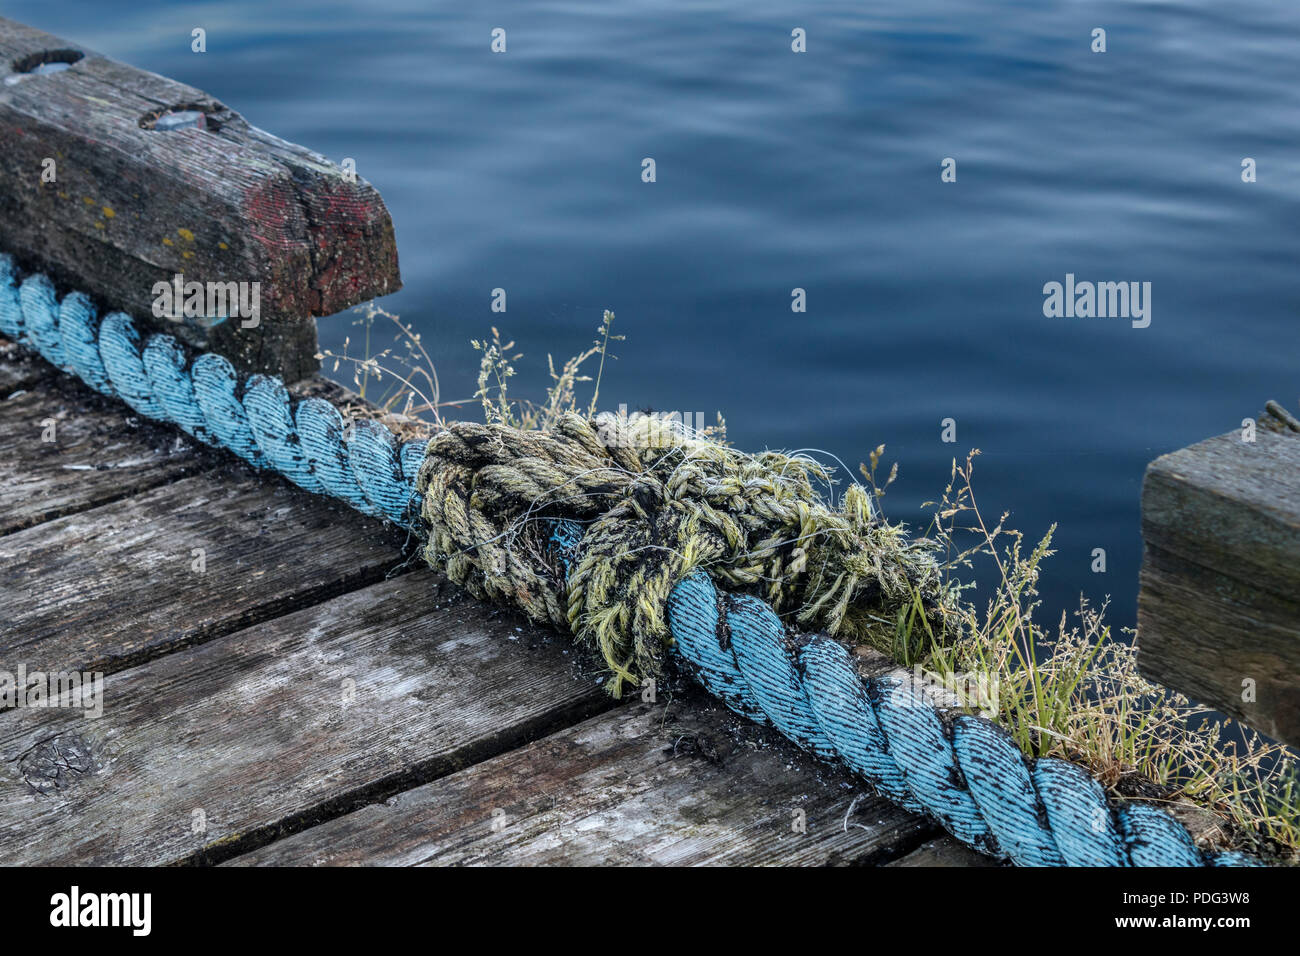 Die glatte Wasseroberfläche kontrastiert mit der groben Texturen eines verwitterten alten hölzernen Dock, und die einst starke aber jetzt ausgefranste Seile aufgereiht entlang. Stockfoto